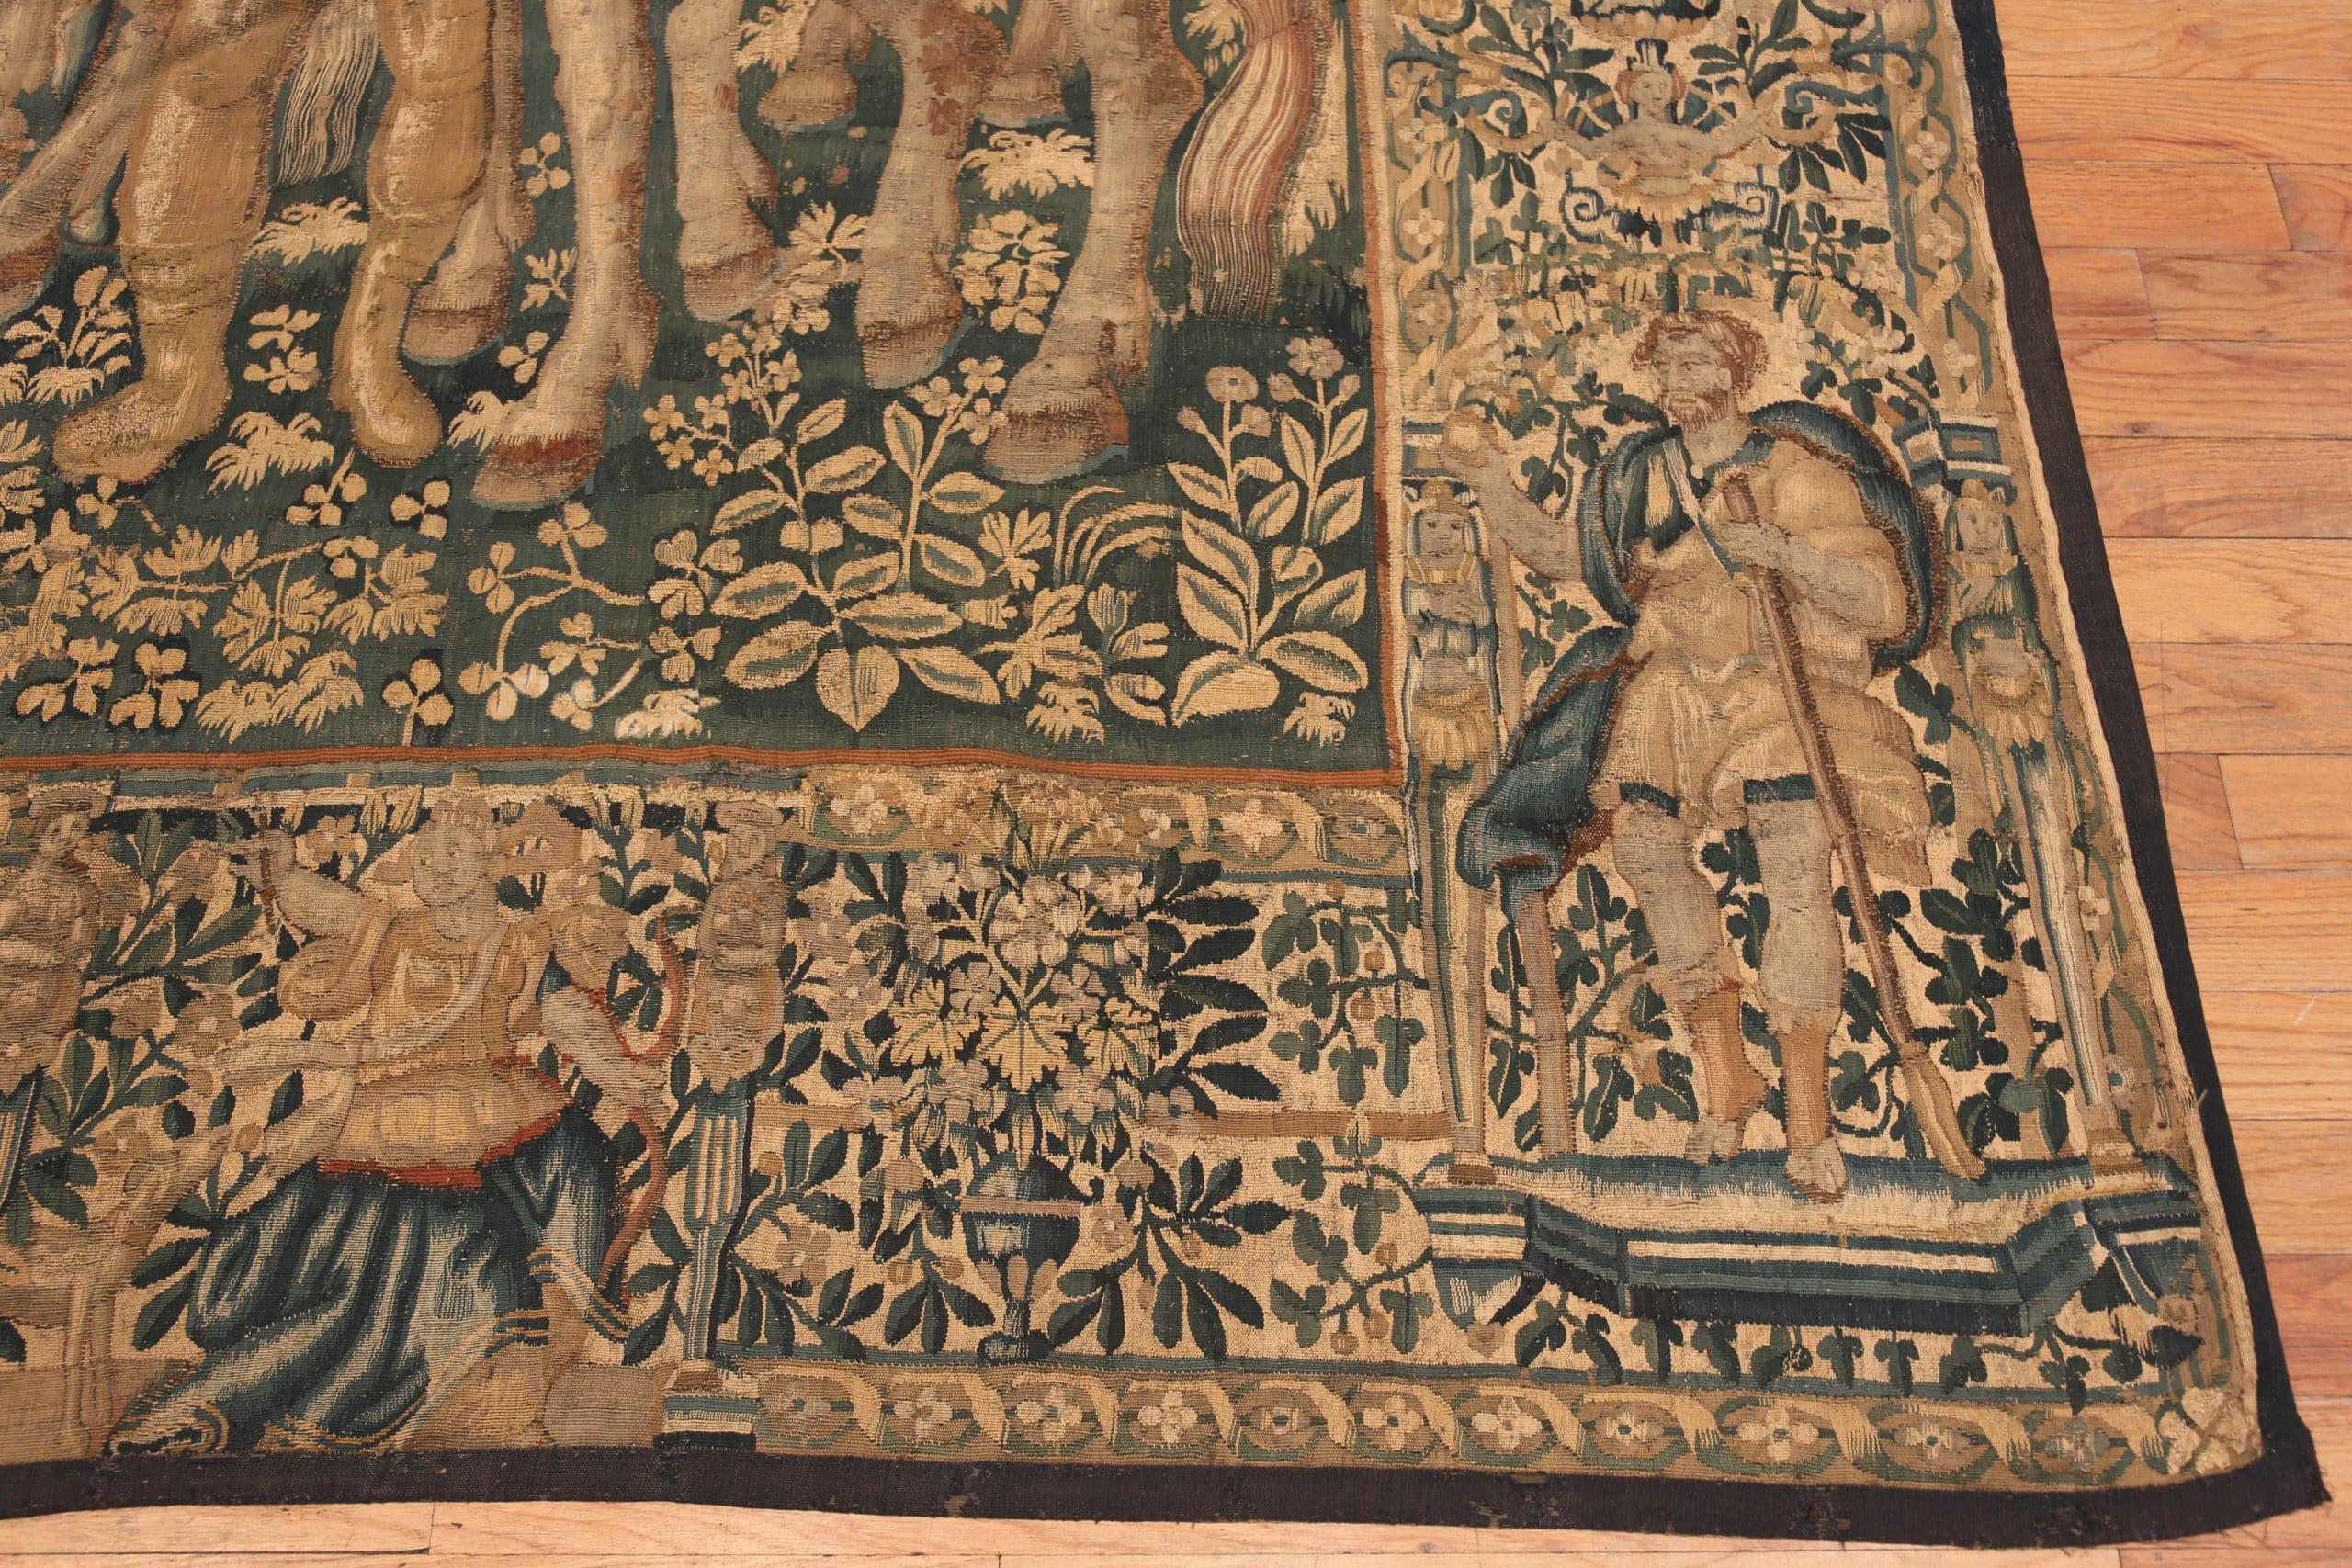 Tapisserie ancienne flamande du Roi Salomon du 16ème siècle, Pays d'origine : Belgique, Circa Date : 16ème siècle. Taille : 11 ft 4 in x 12 ft 10 in (3.45 m x 3.91 m)

